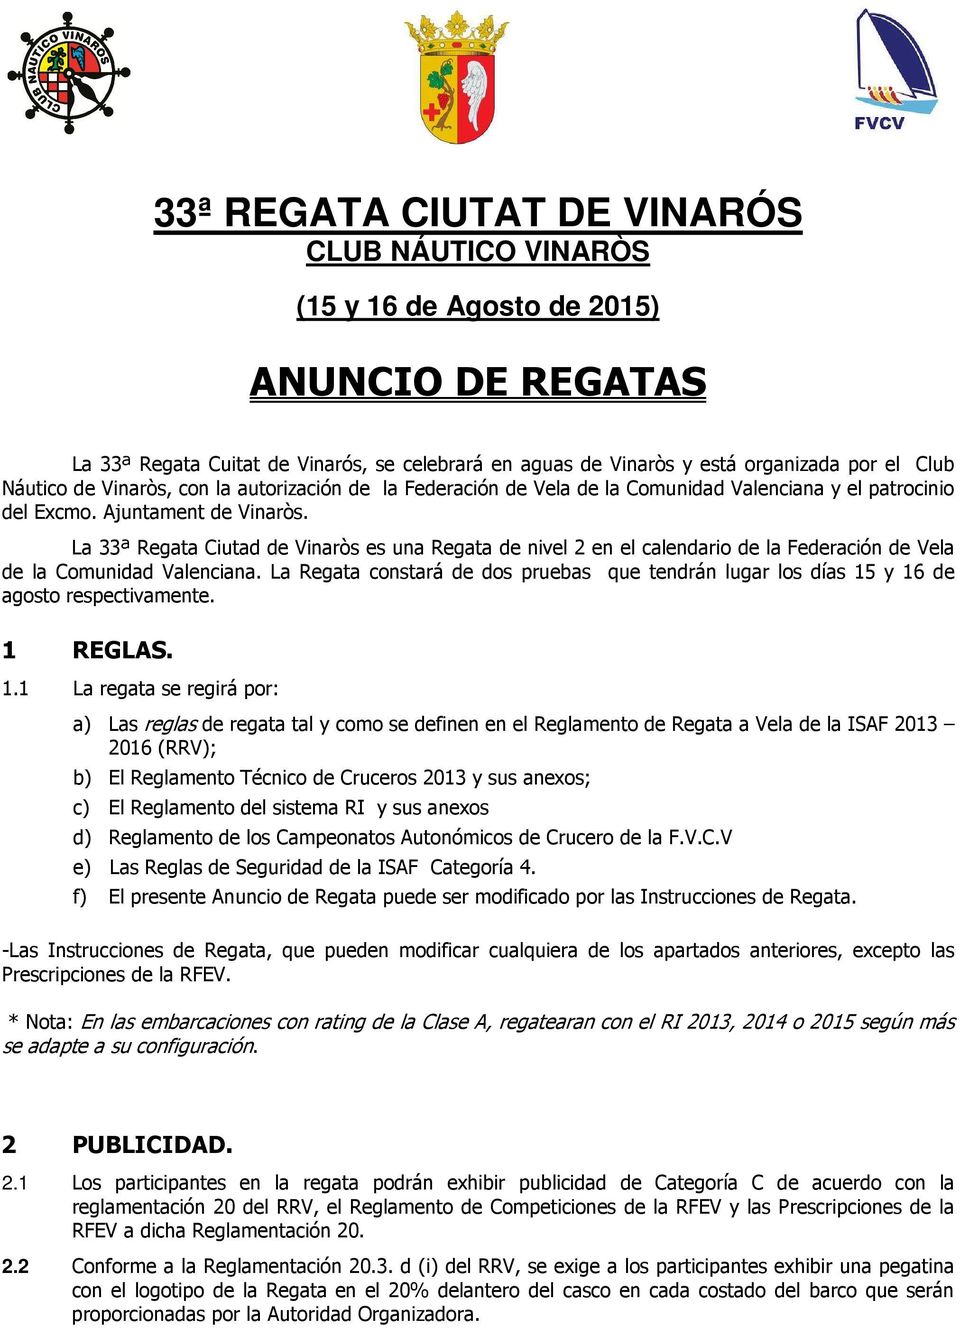 La 33ª Regata Ciutad de Vinaròs es una Regata de nivel 2 en el calendario de la Federación de Vela de la Comunidad Valenciana.